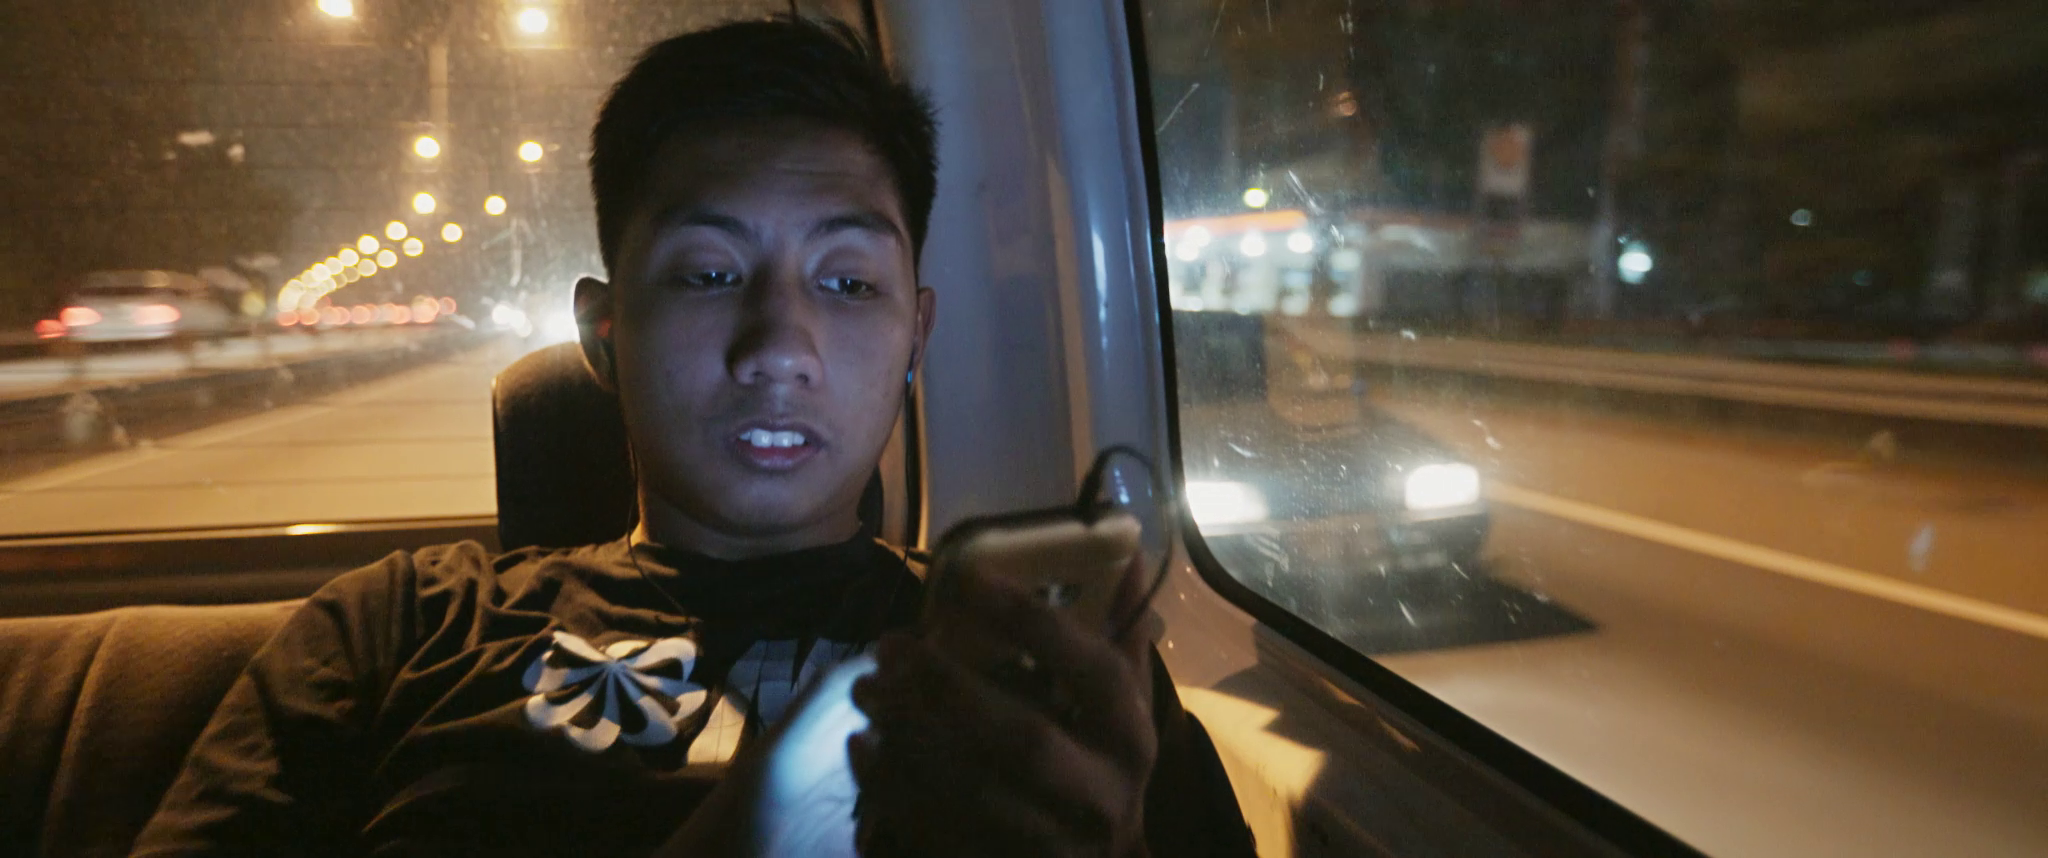 Pemain bola sepak buta Asri bermain dengan telefon bimbitnya semasa dalam van.